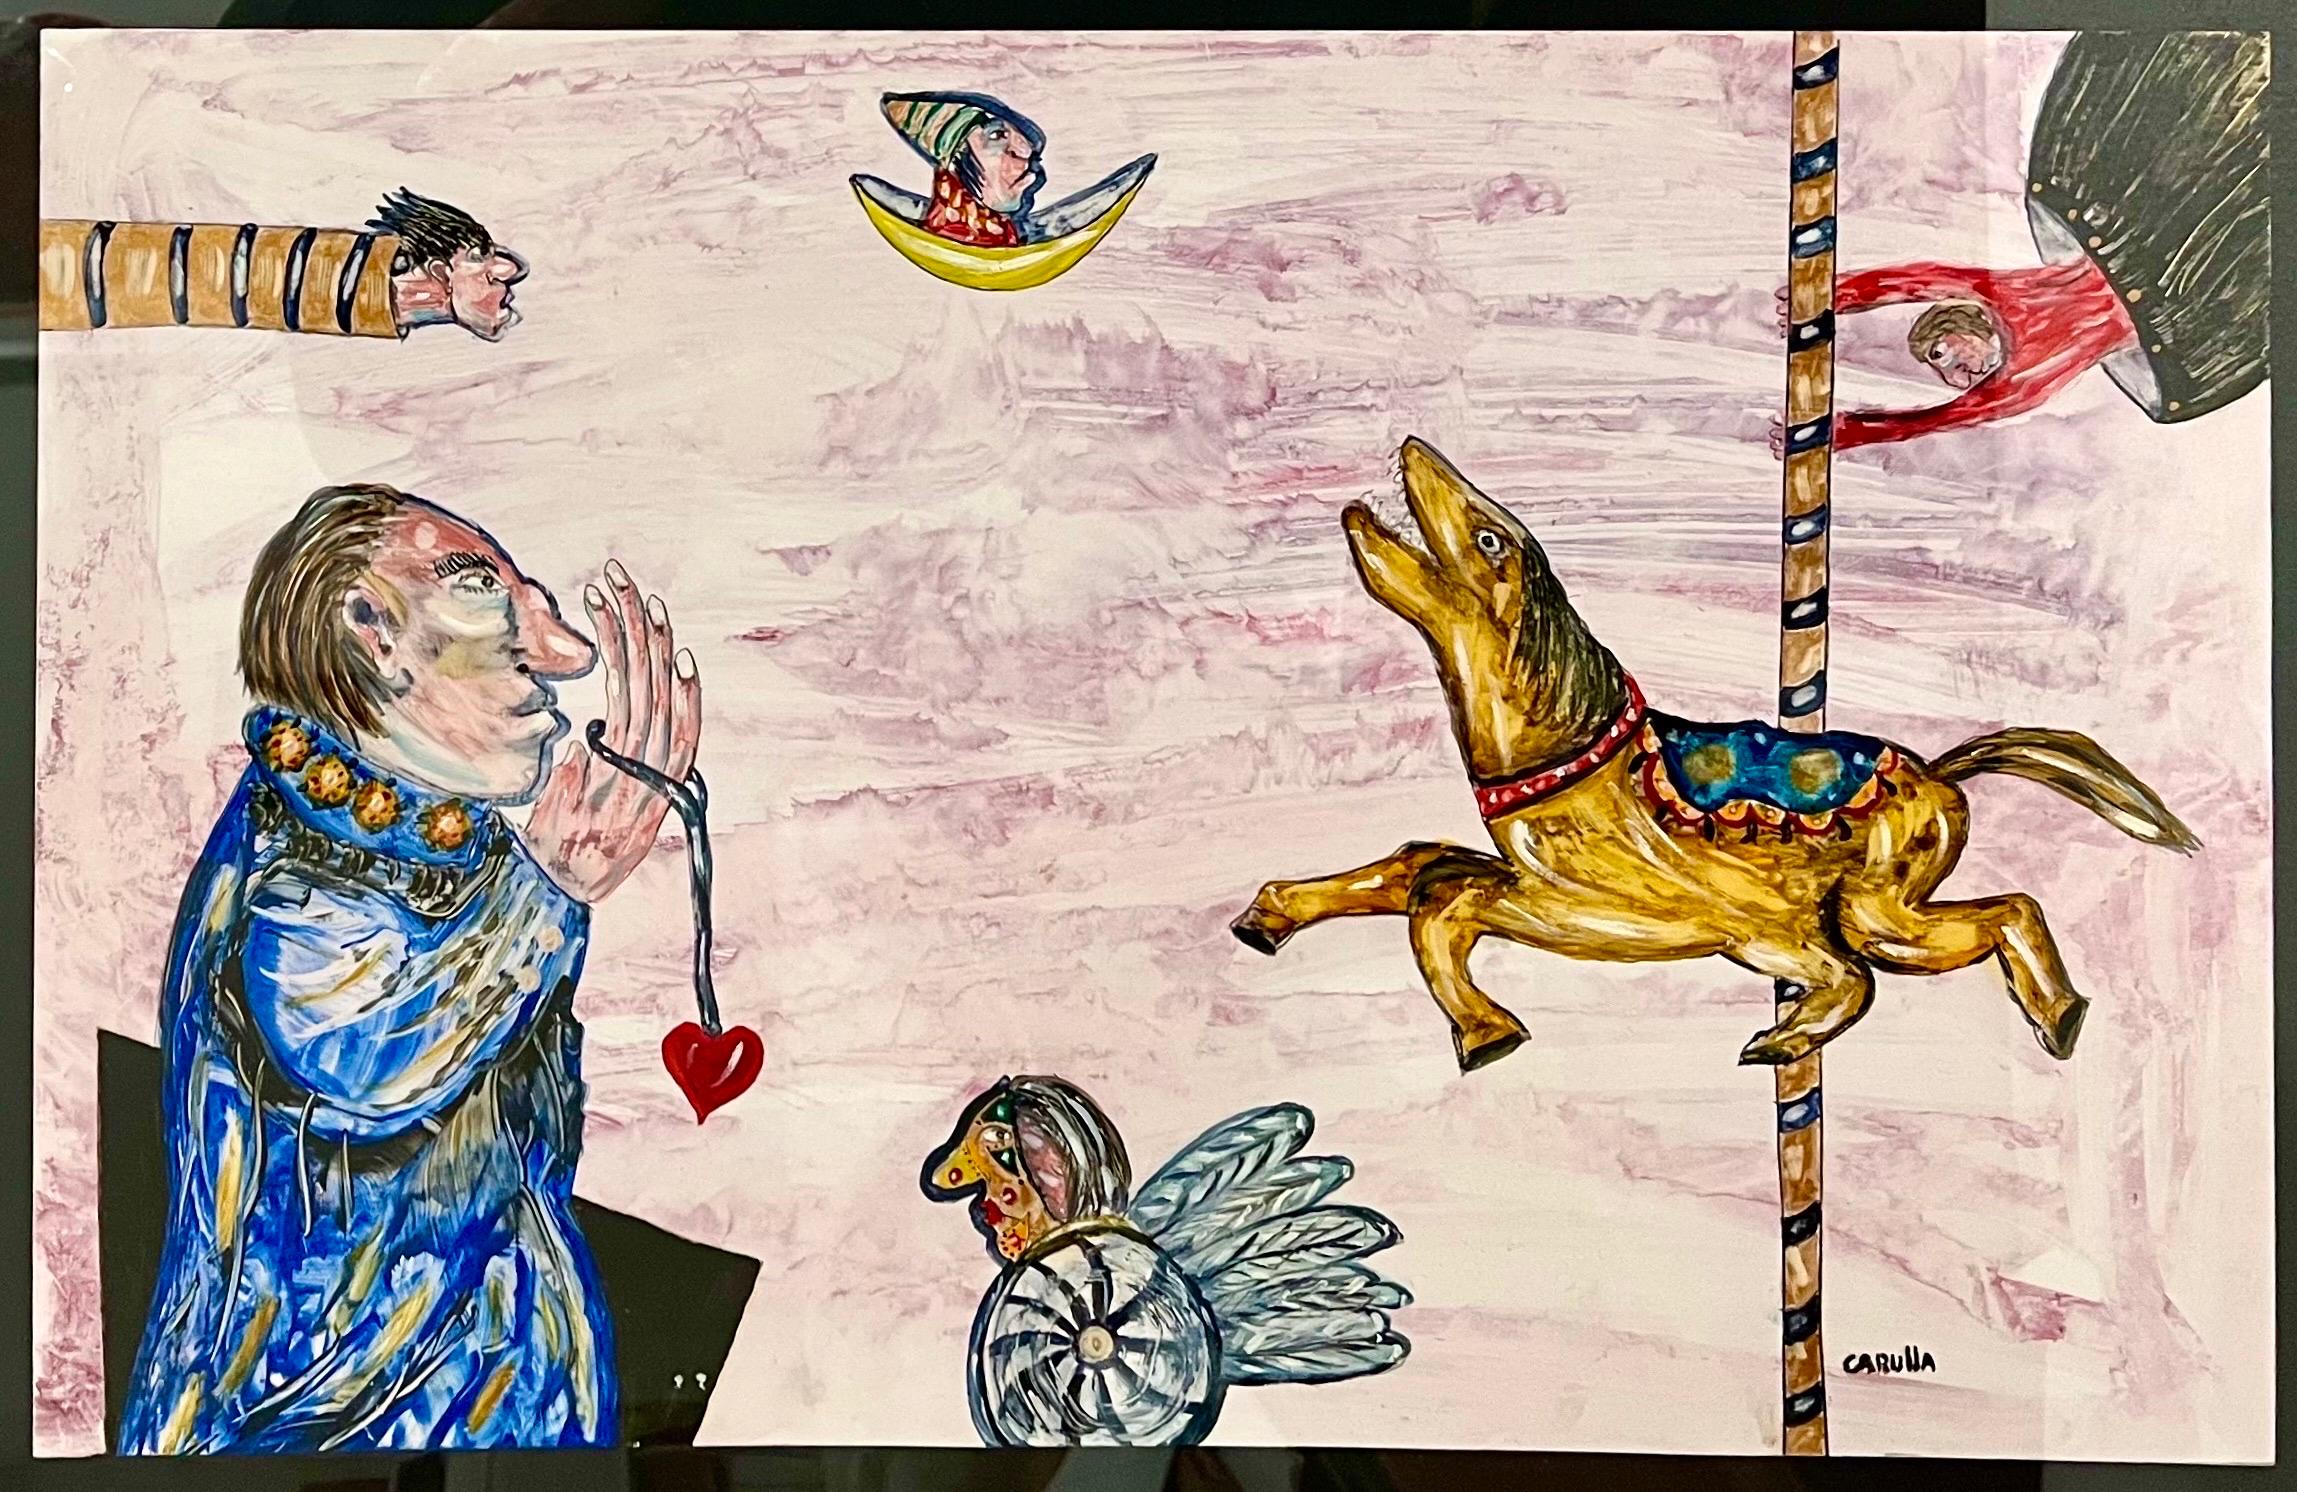 Ramon Antonio Carulla (cubain, né en 1936). 
Peintures à l'huile sur papier. Intitulé "Quand les rêves deviennent réalité" 
Signature de l'artiste en bas à droite. Titre au verso.
Conserve l'étiquette d'origine de la Joy Moos Gallery. La feuille